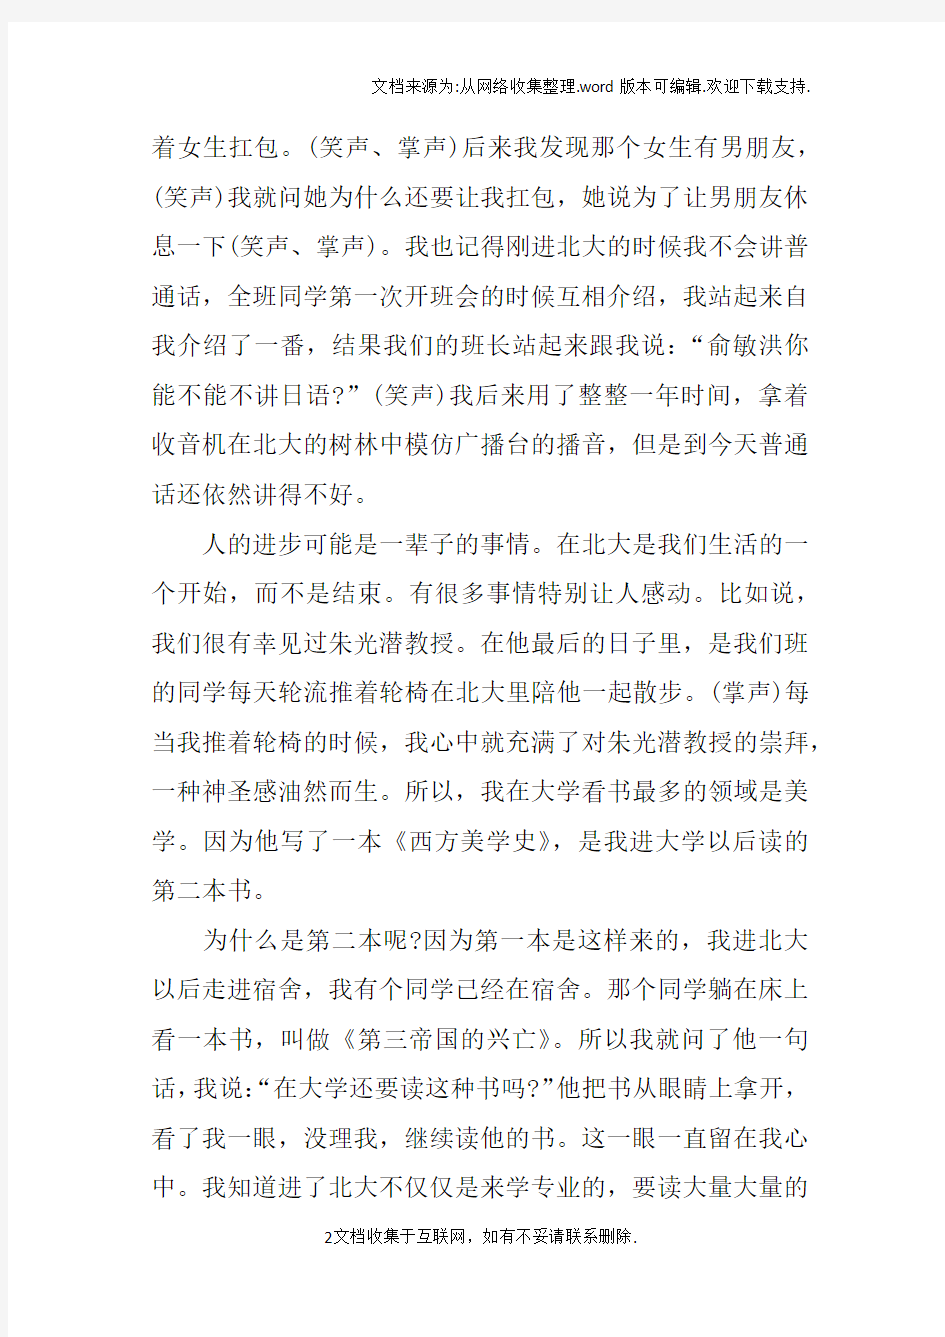 北京大学开学典礼上的发言